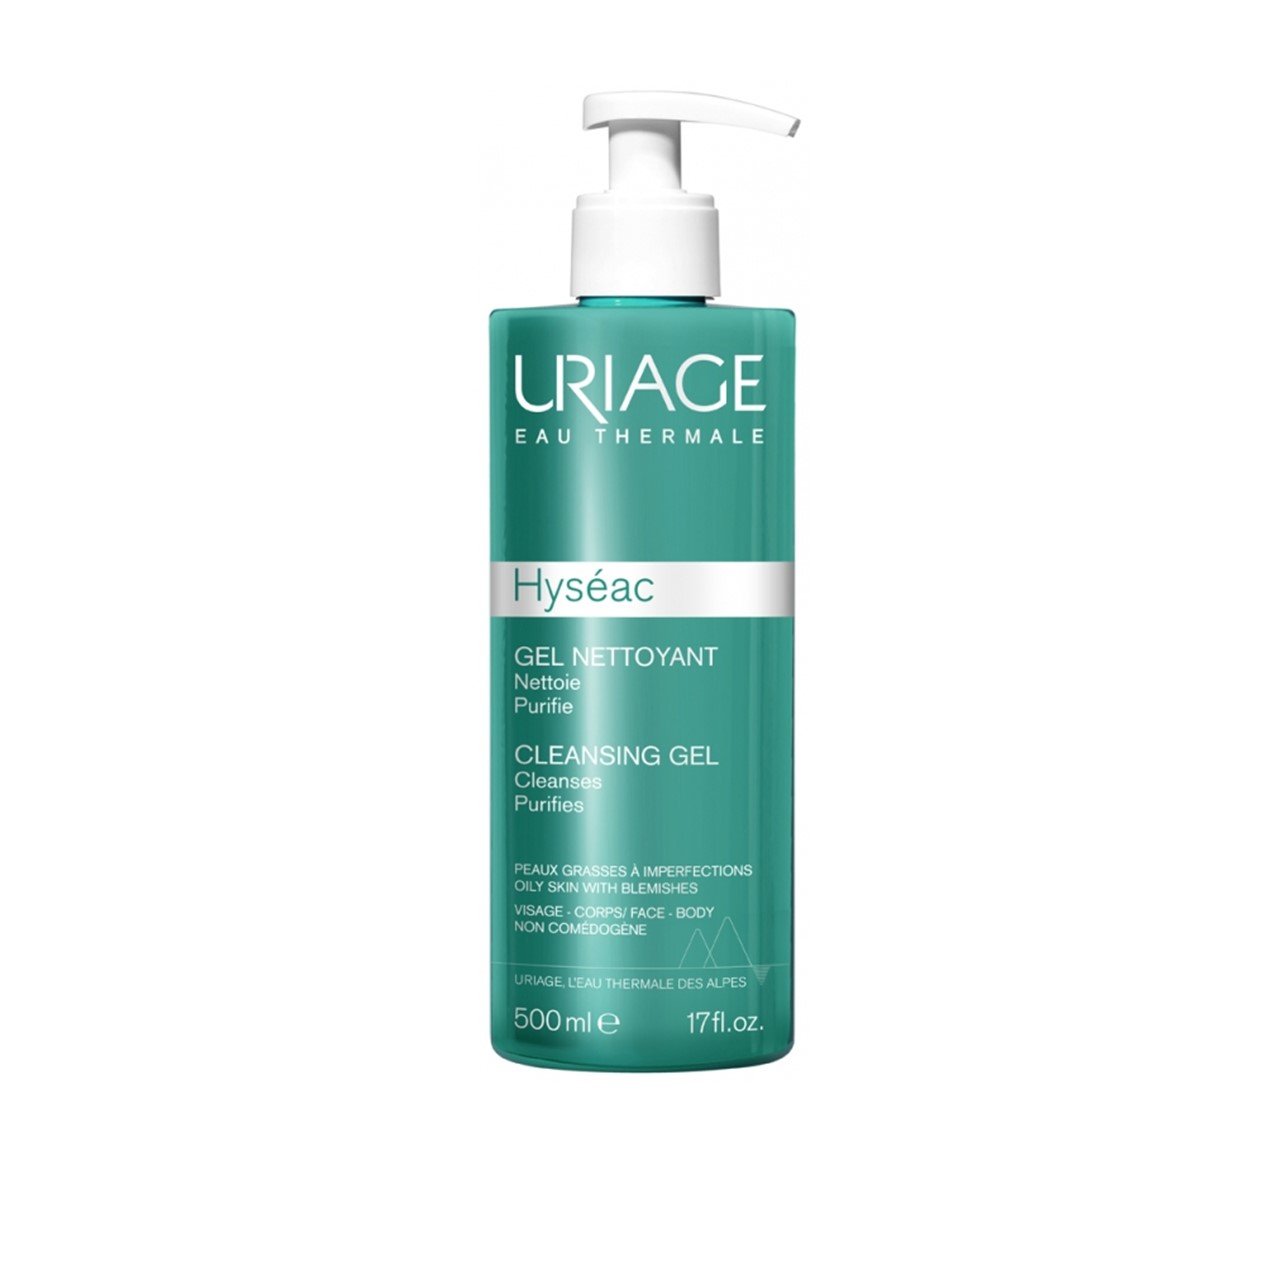 Uriage Hyséac Cleansing Gel 500ml (16.91fl oz)